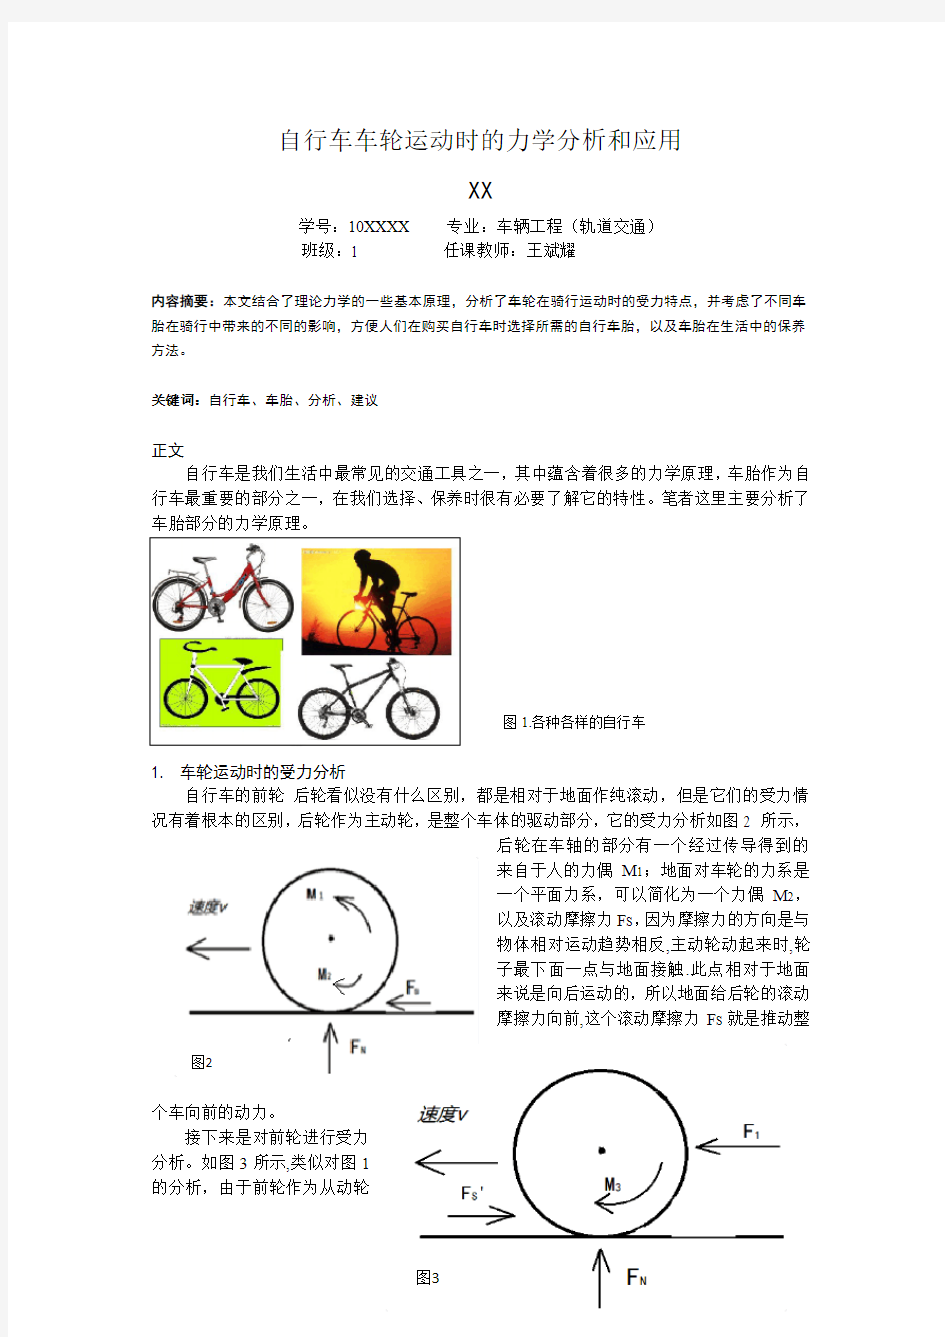 理力优秀论文  自行车车轮运动时的力学分析和应用